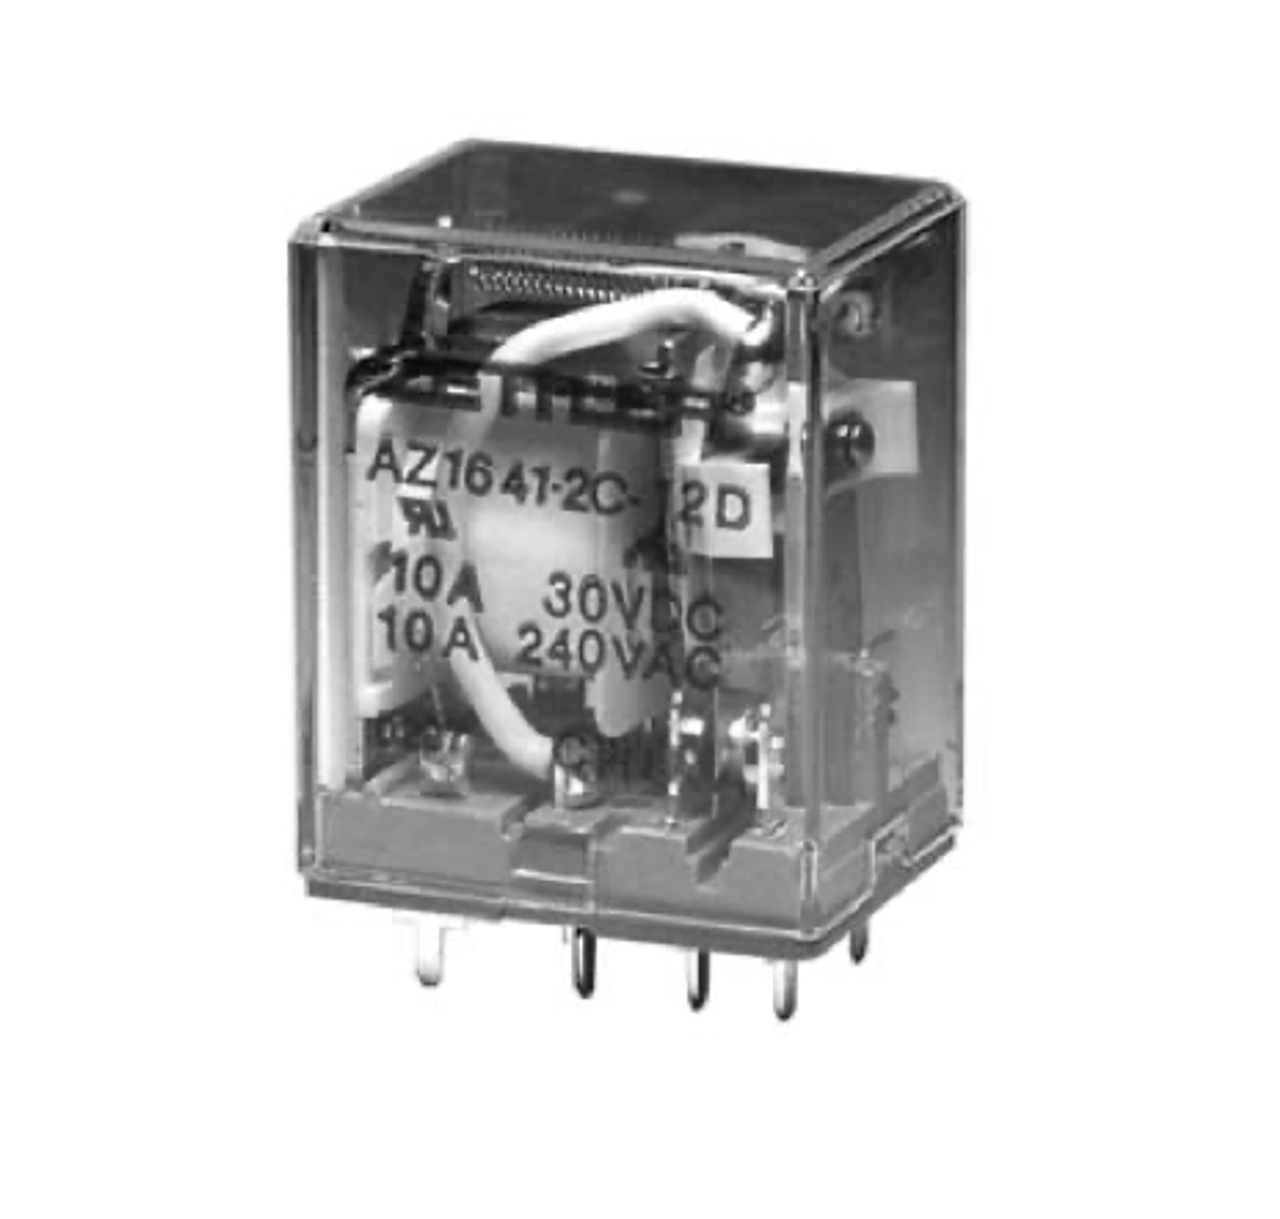 American Zettler AZ1641-2CT-120A Power Relay